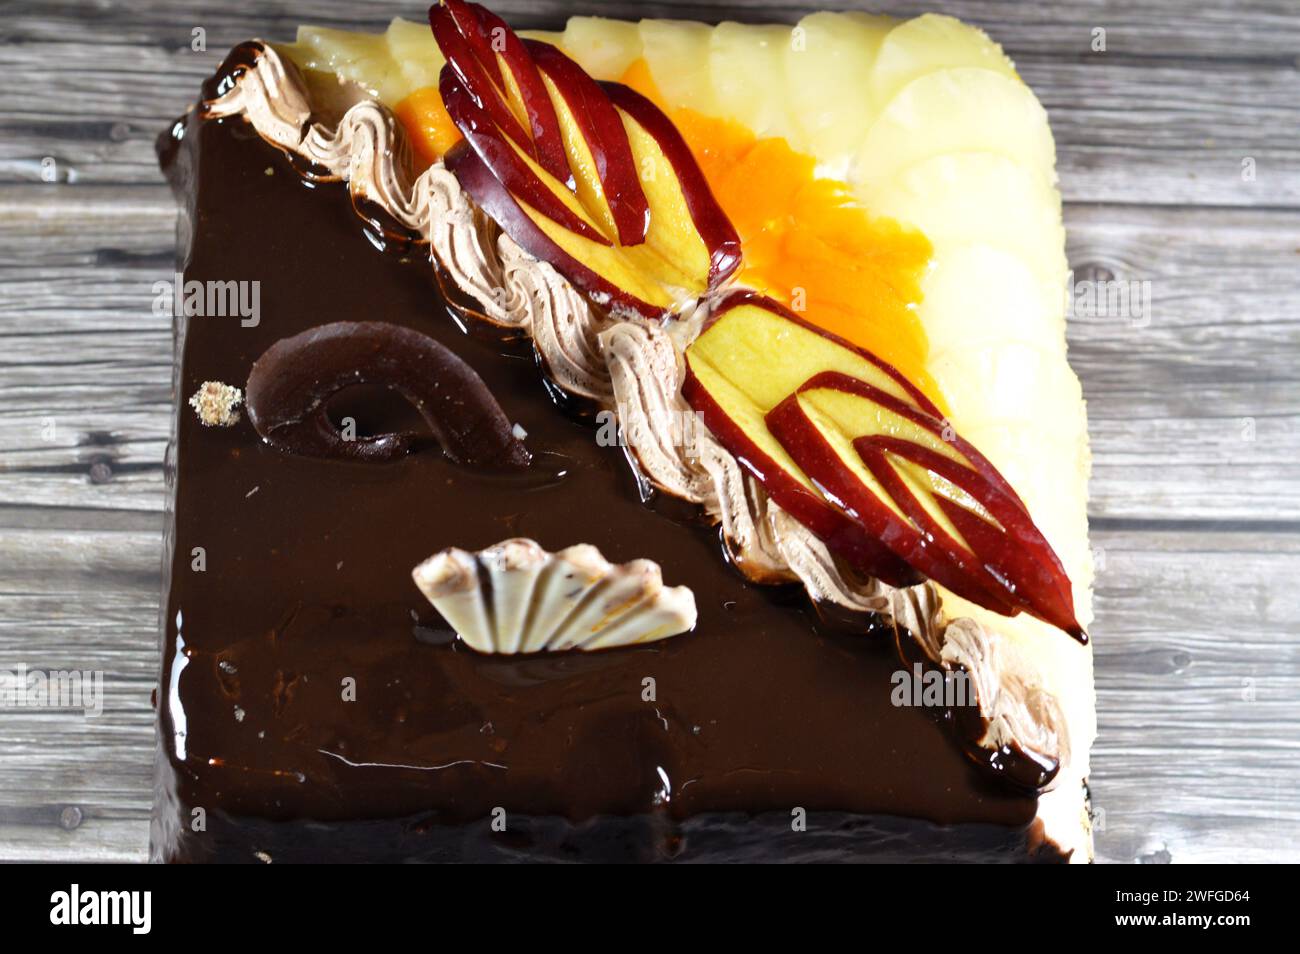 Gâteau d'anniversaire de deux moitiés différentes pièces gâteau crémeux spongieux pour les célébrations, chocolat noir, caramel, crème fouettée à la vanille, tranches d'ananas Banque D'Images